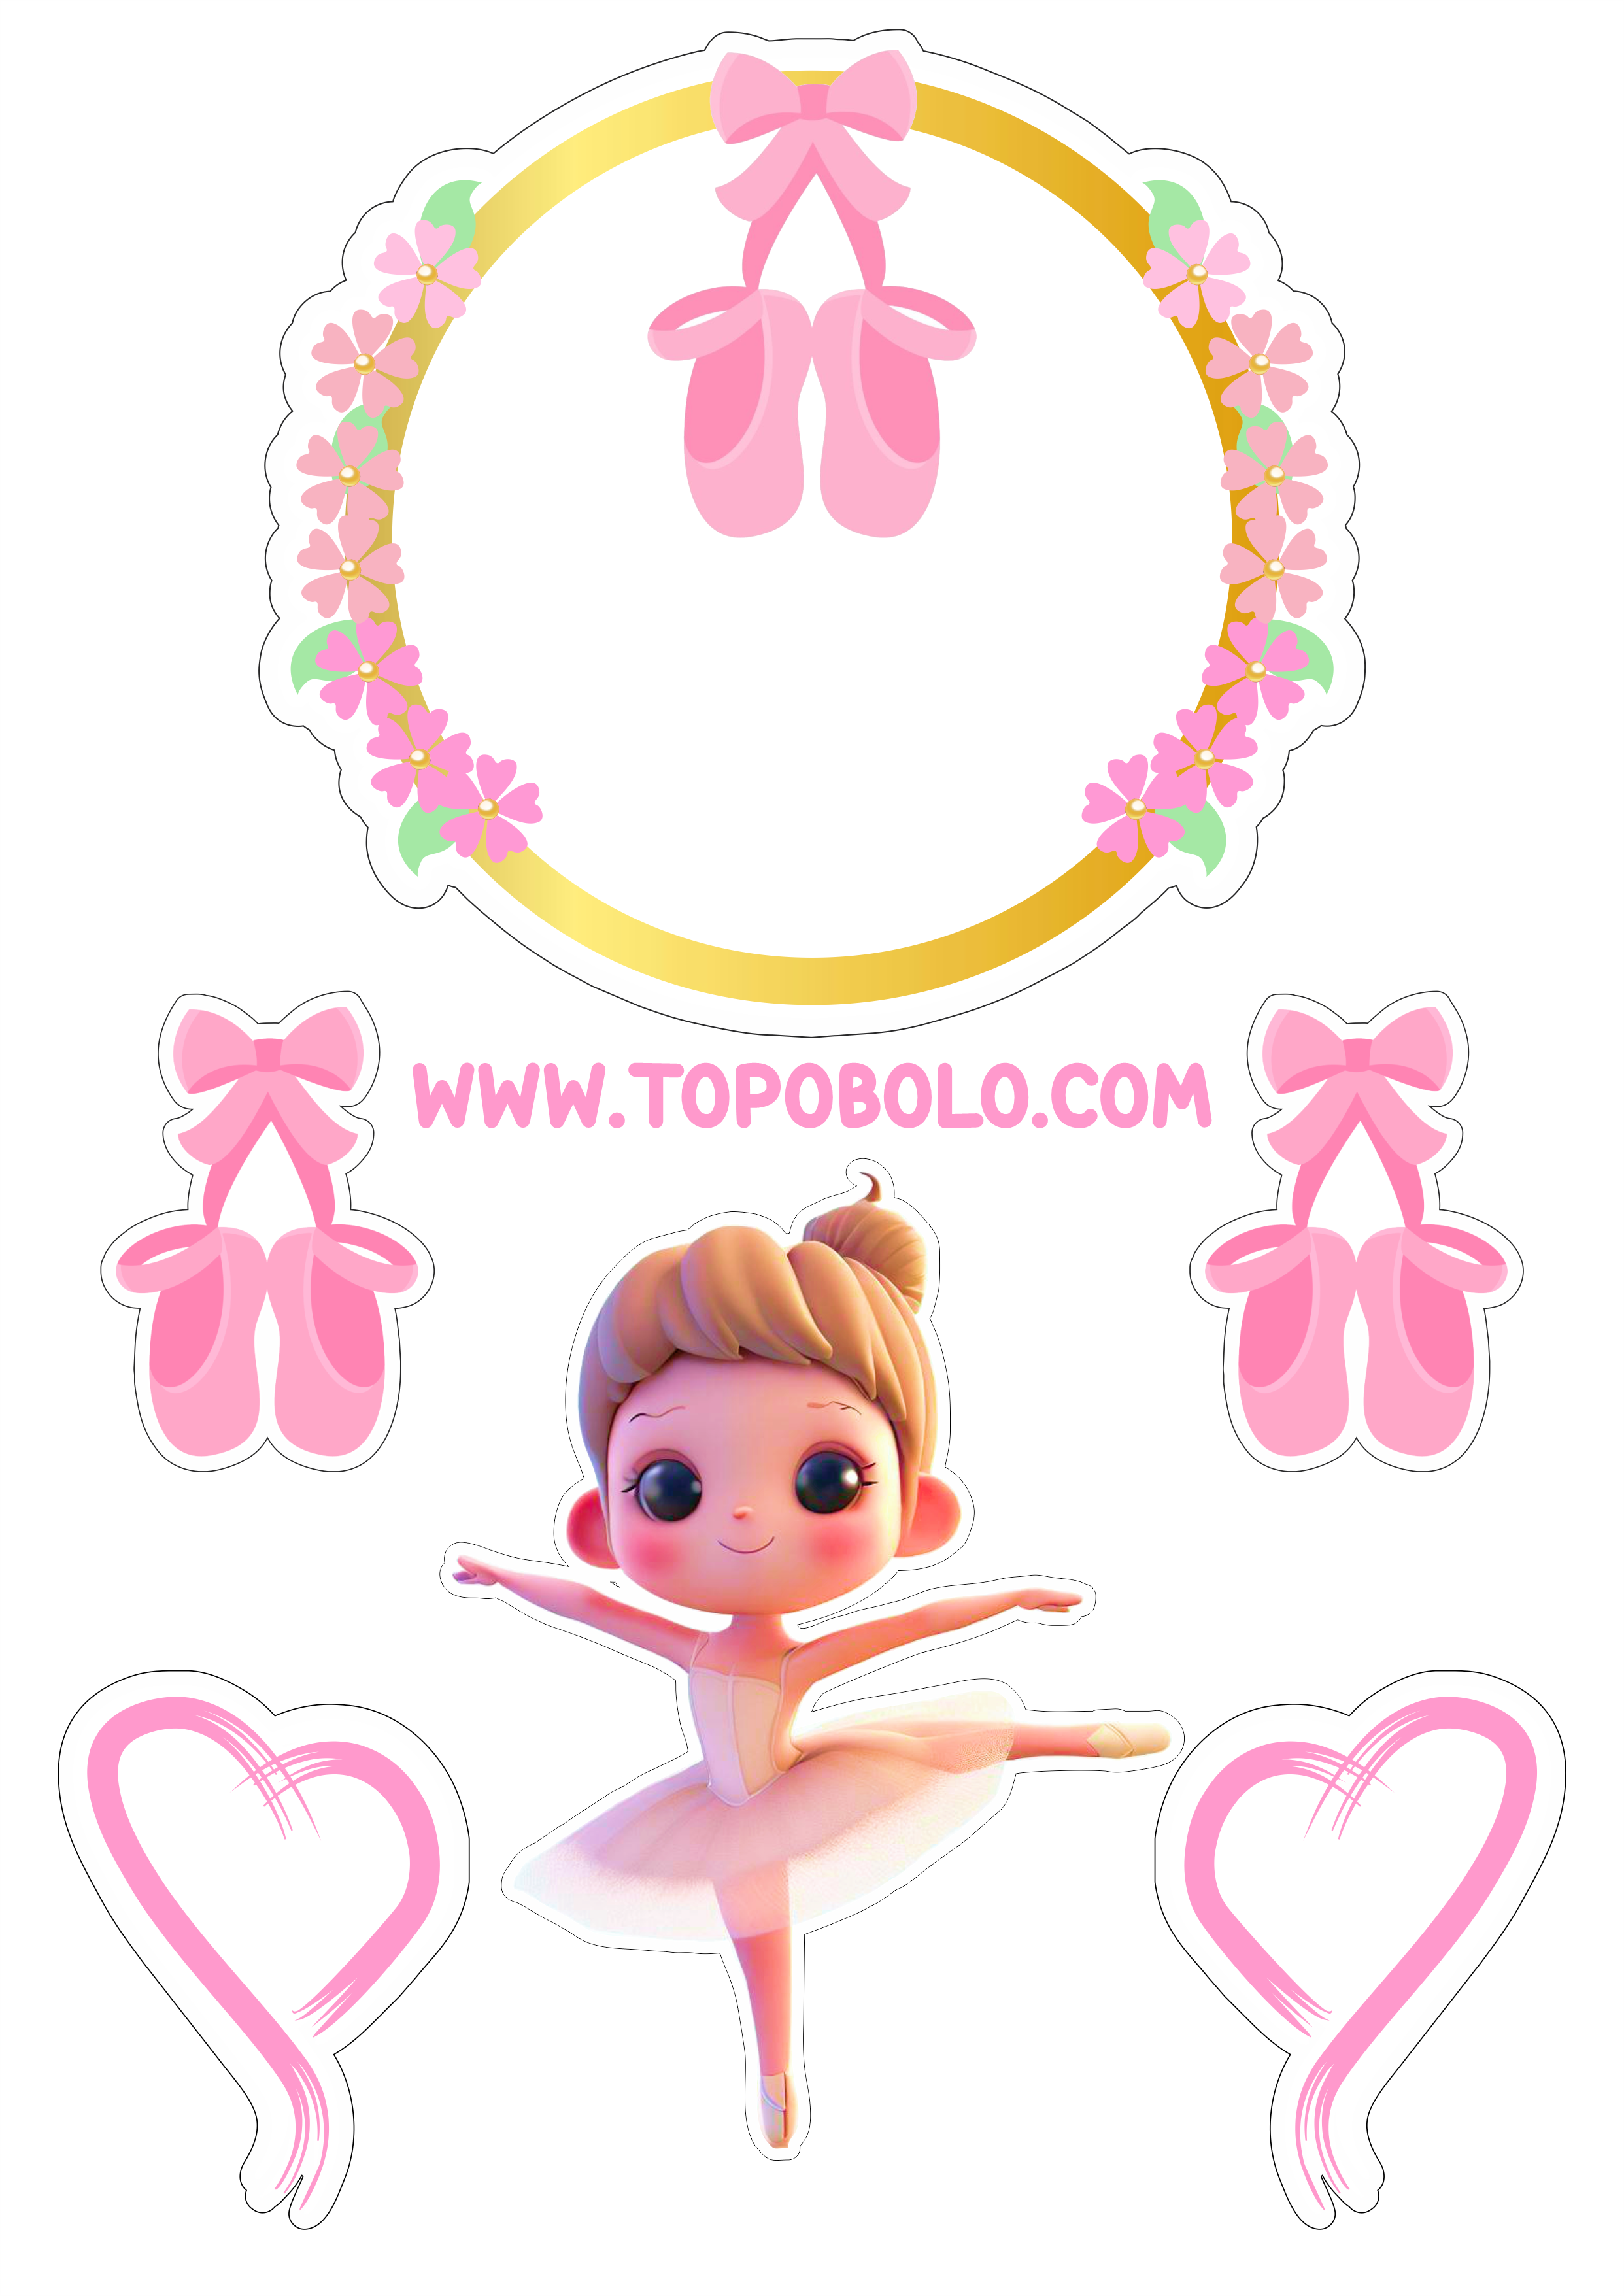 Bailarina topo de bolo aniversário menina decoração rosa com corações png